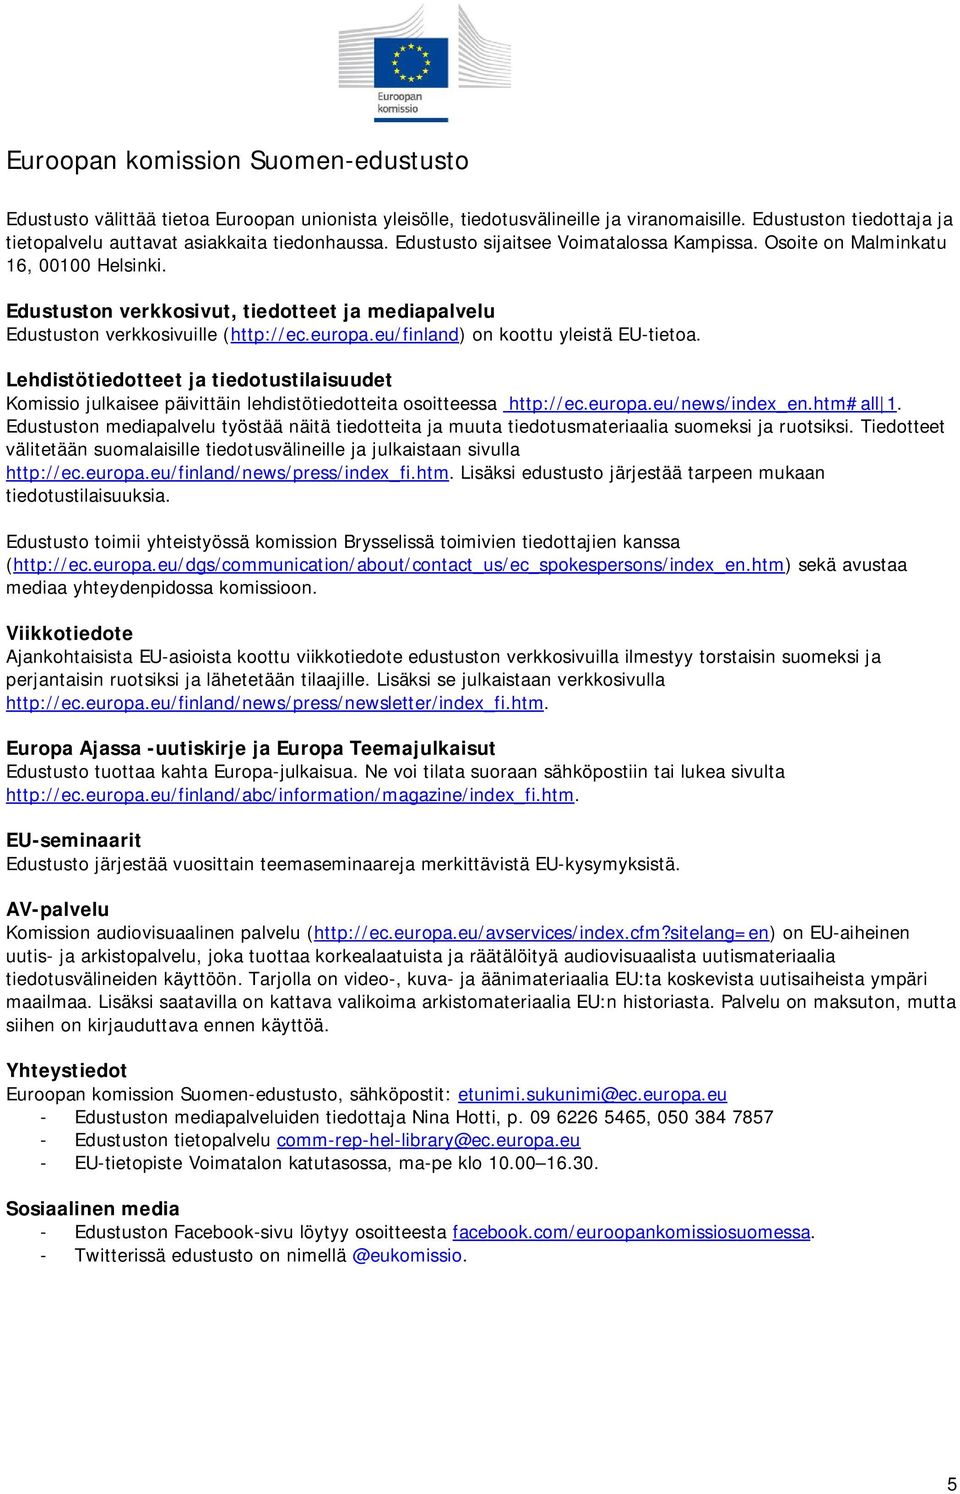 Edustuston verkkosivut, tiedotteet ja mediapalvelu Edustuston verkkosivuille (http://ec.europa.eu/finland) on koottu yleistä EU-tietoa.